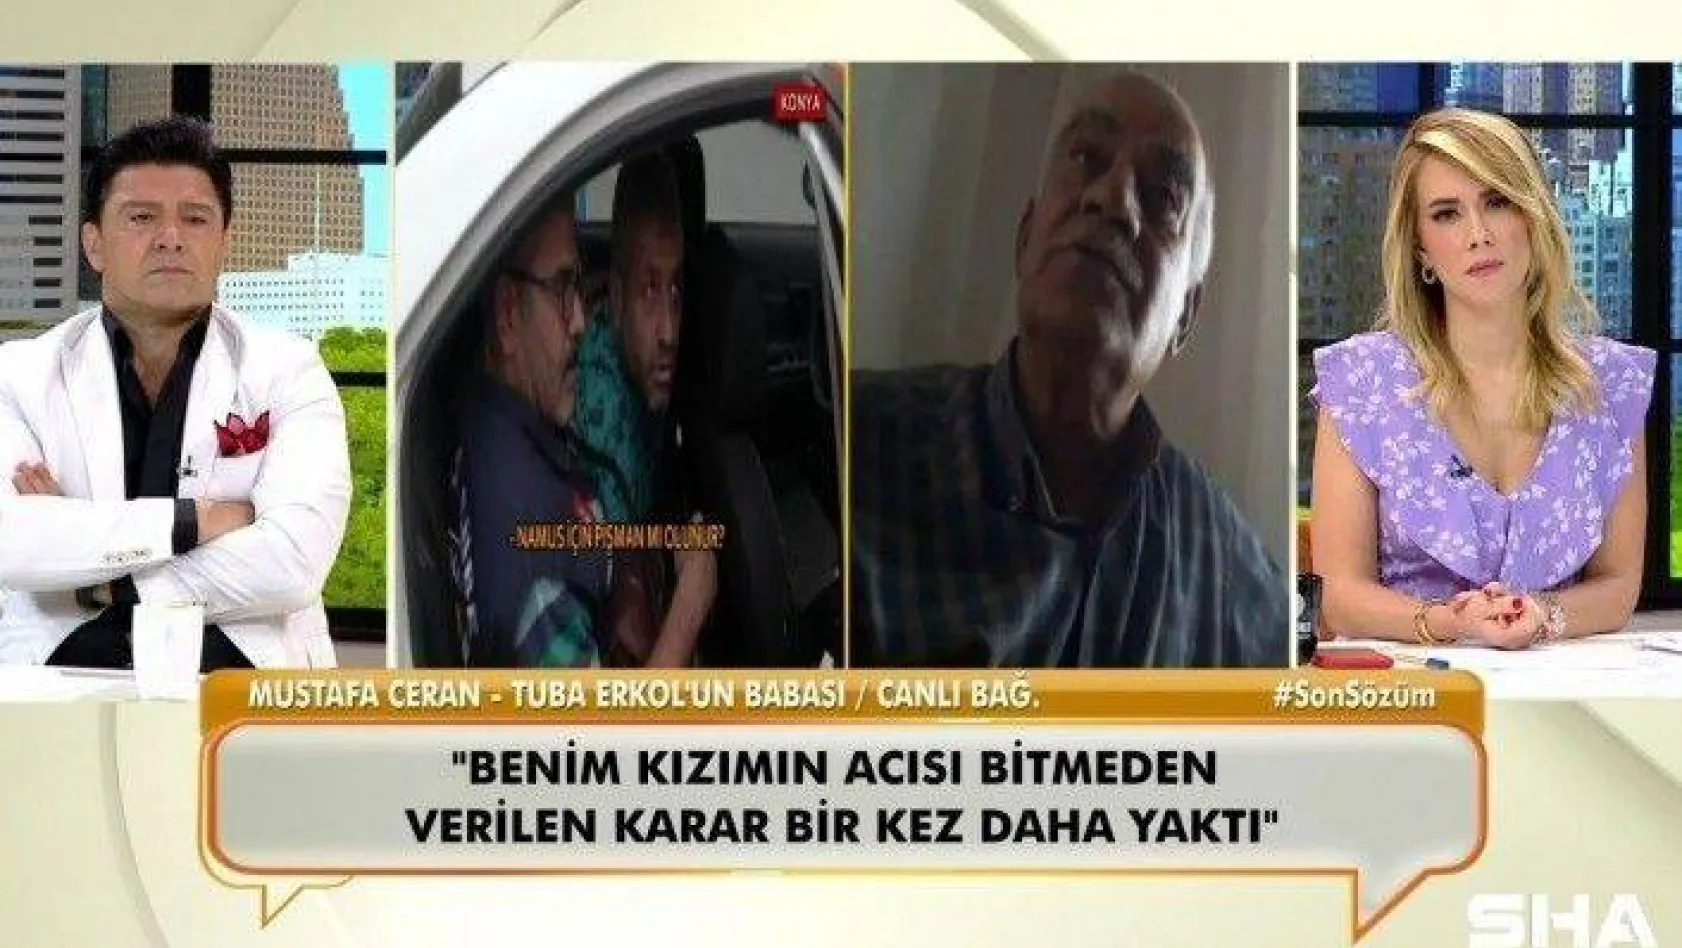 Eşi tarafından öldürülen Tuba Erkol'un babası Mustafa Ceran konuştu